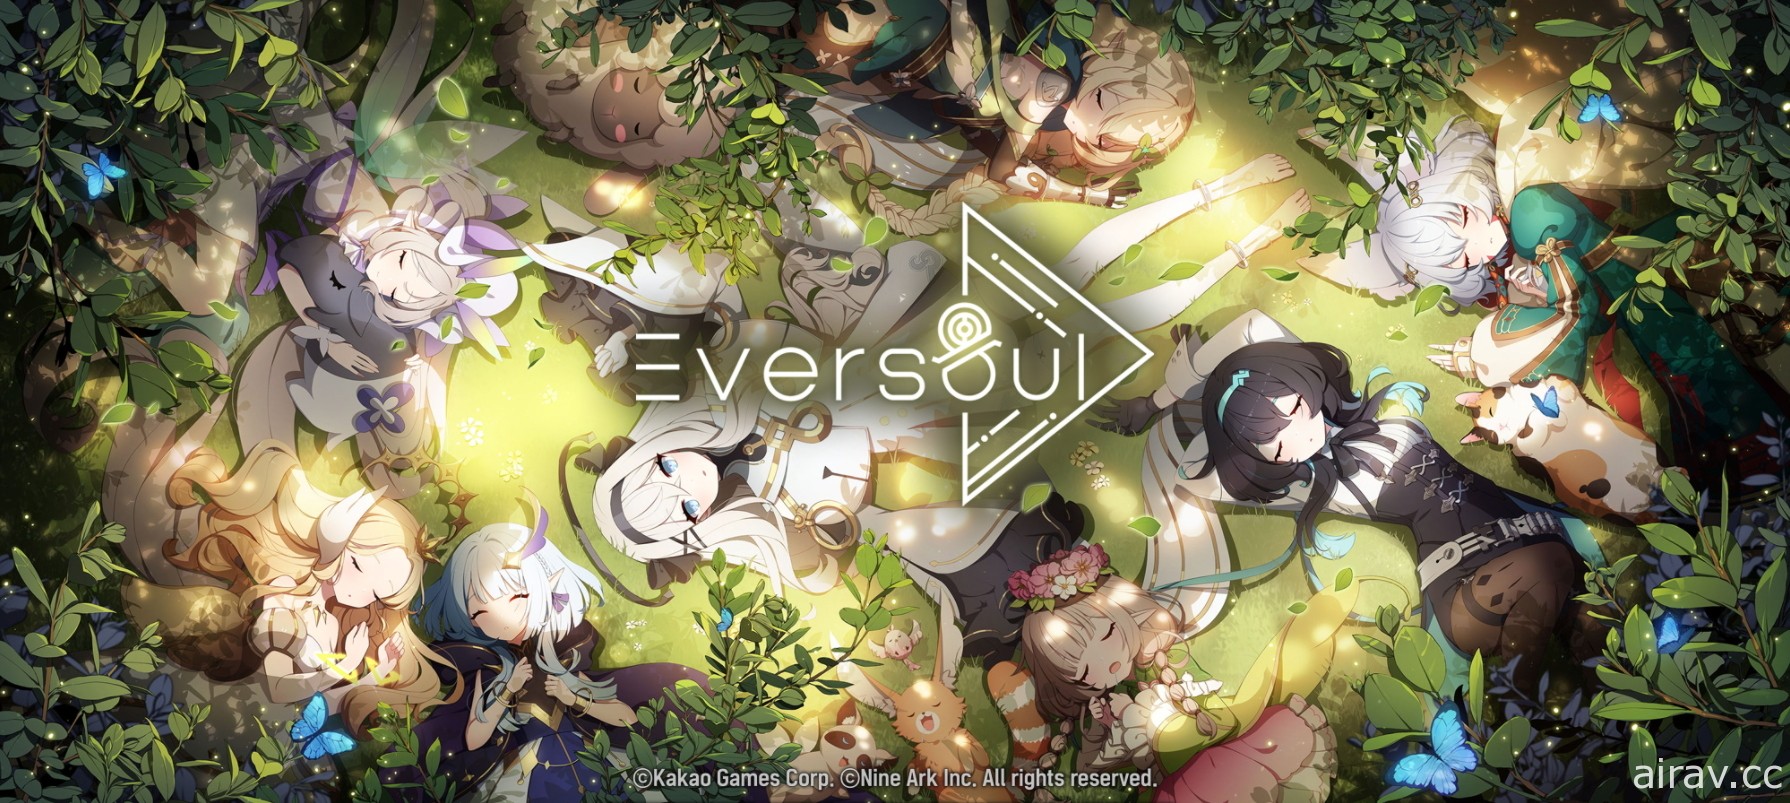 【G★2021】《Eversoul 永恆靈魂》釋出全新主視覺 將於 2021 韓國 G-Star 展覽展出